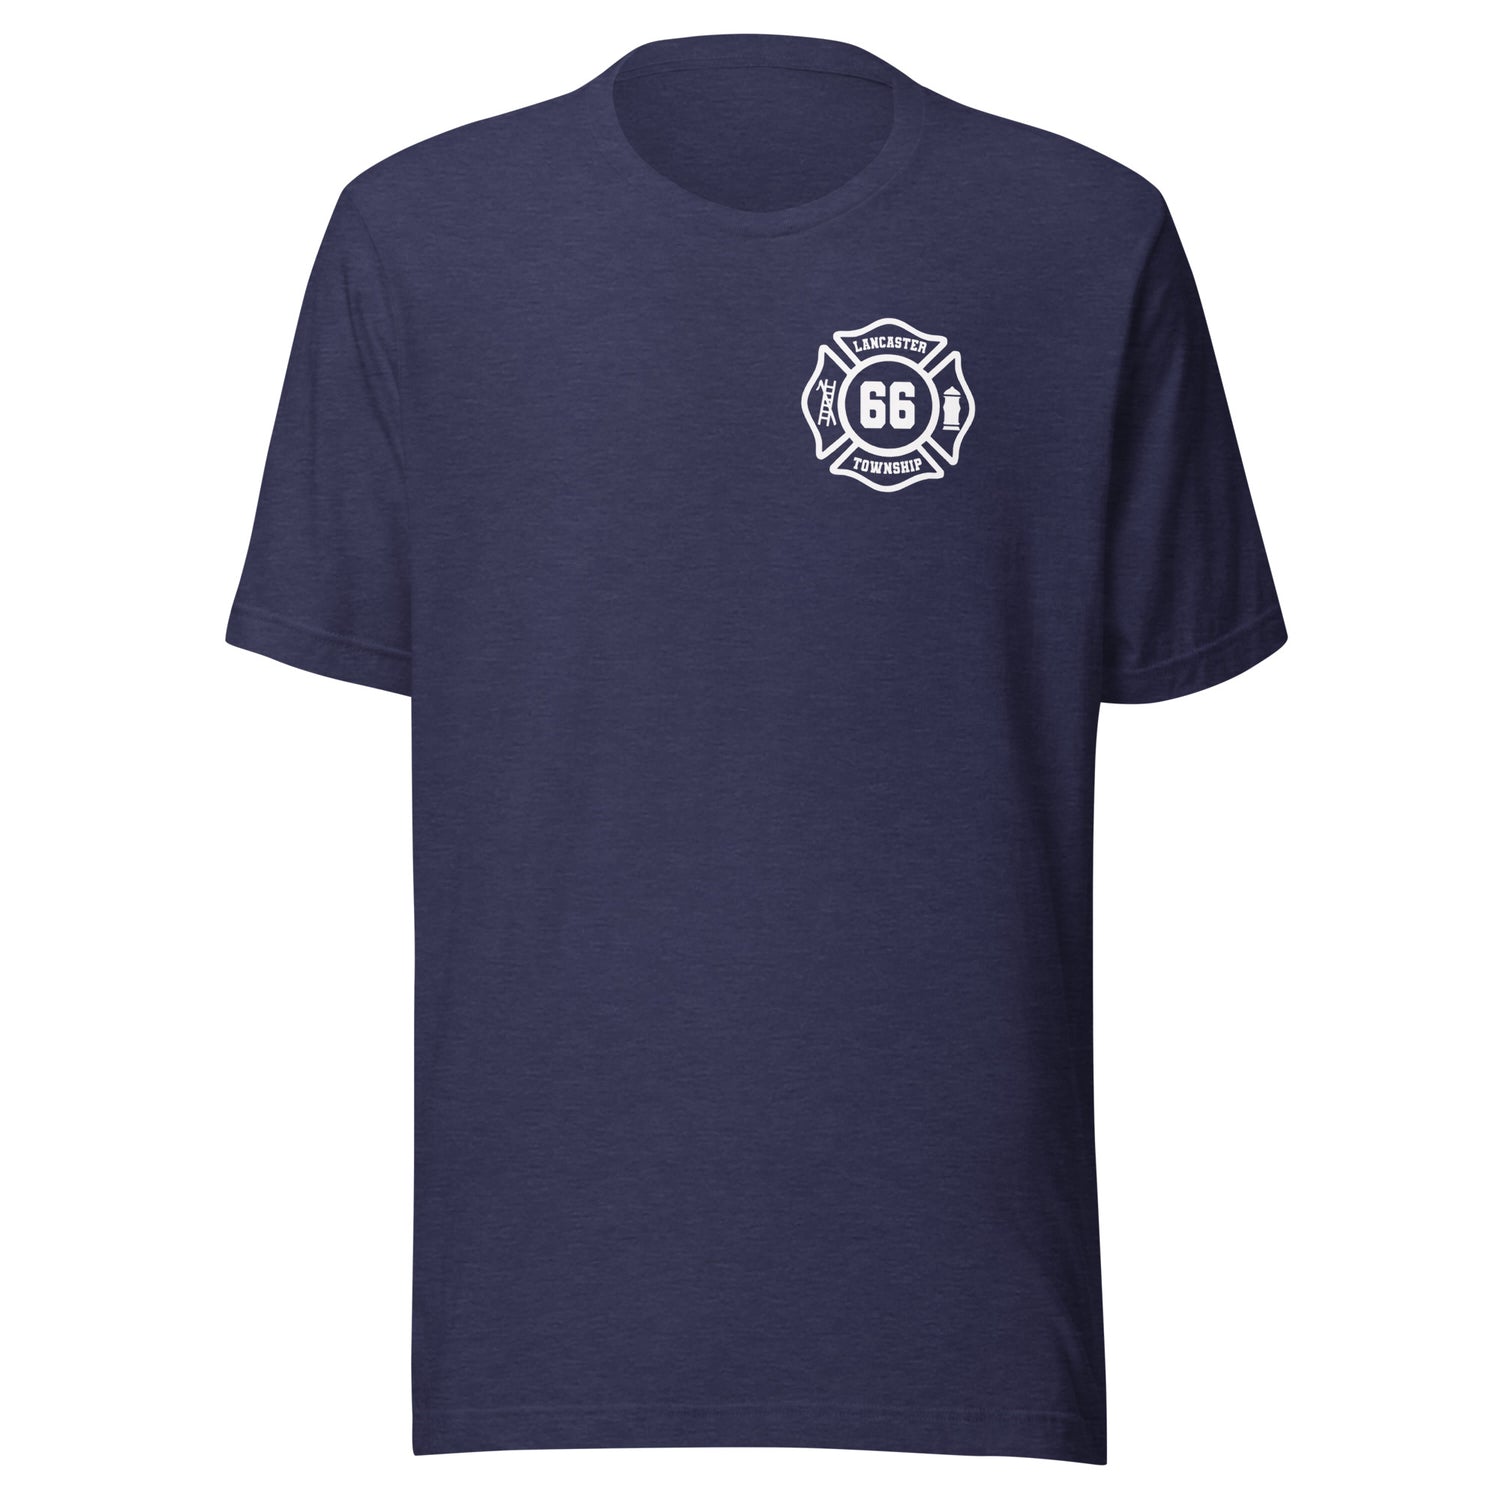 Lancaster Township Fire Department Premium T-shirt